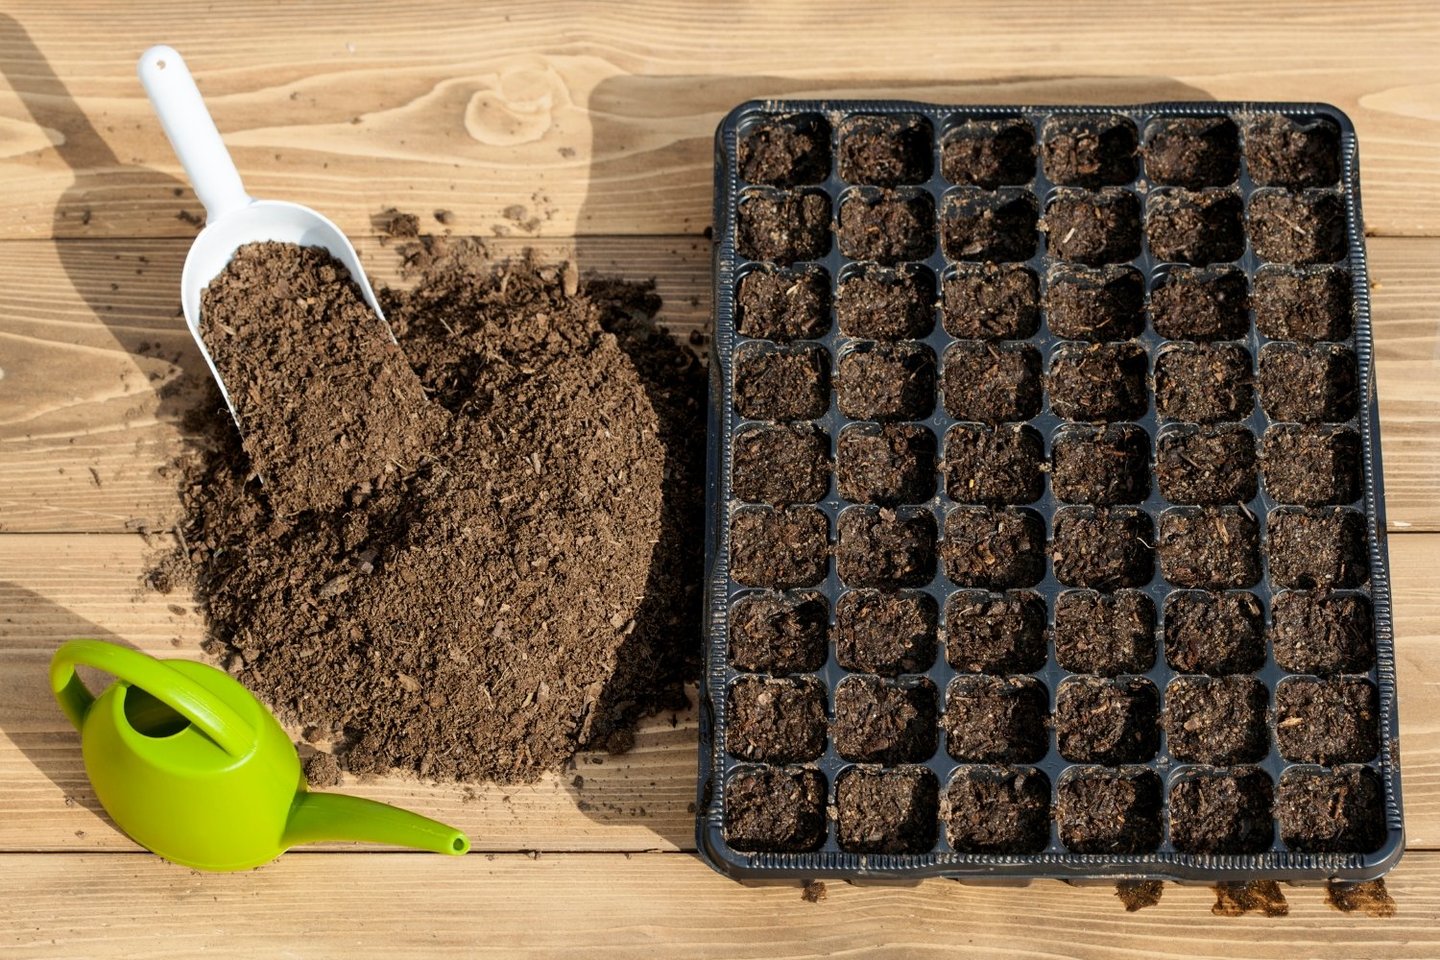 Kaip pasirinkti geriausiai dirvai ir augalams tinkančius substratus ir trąšas?